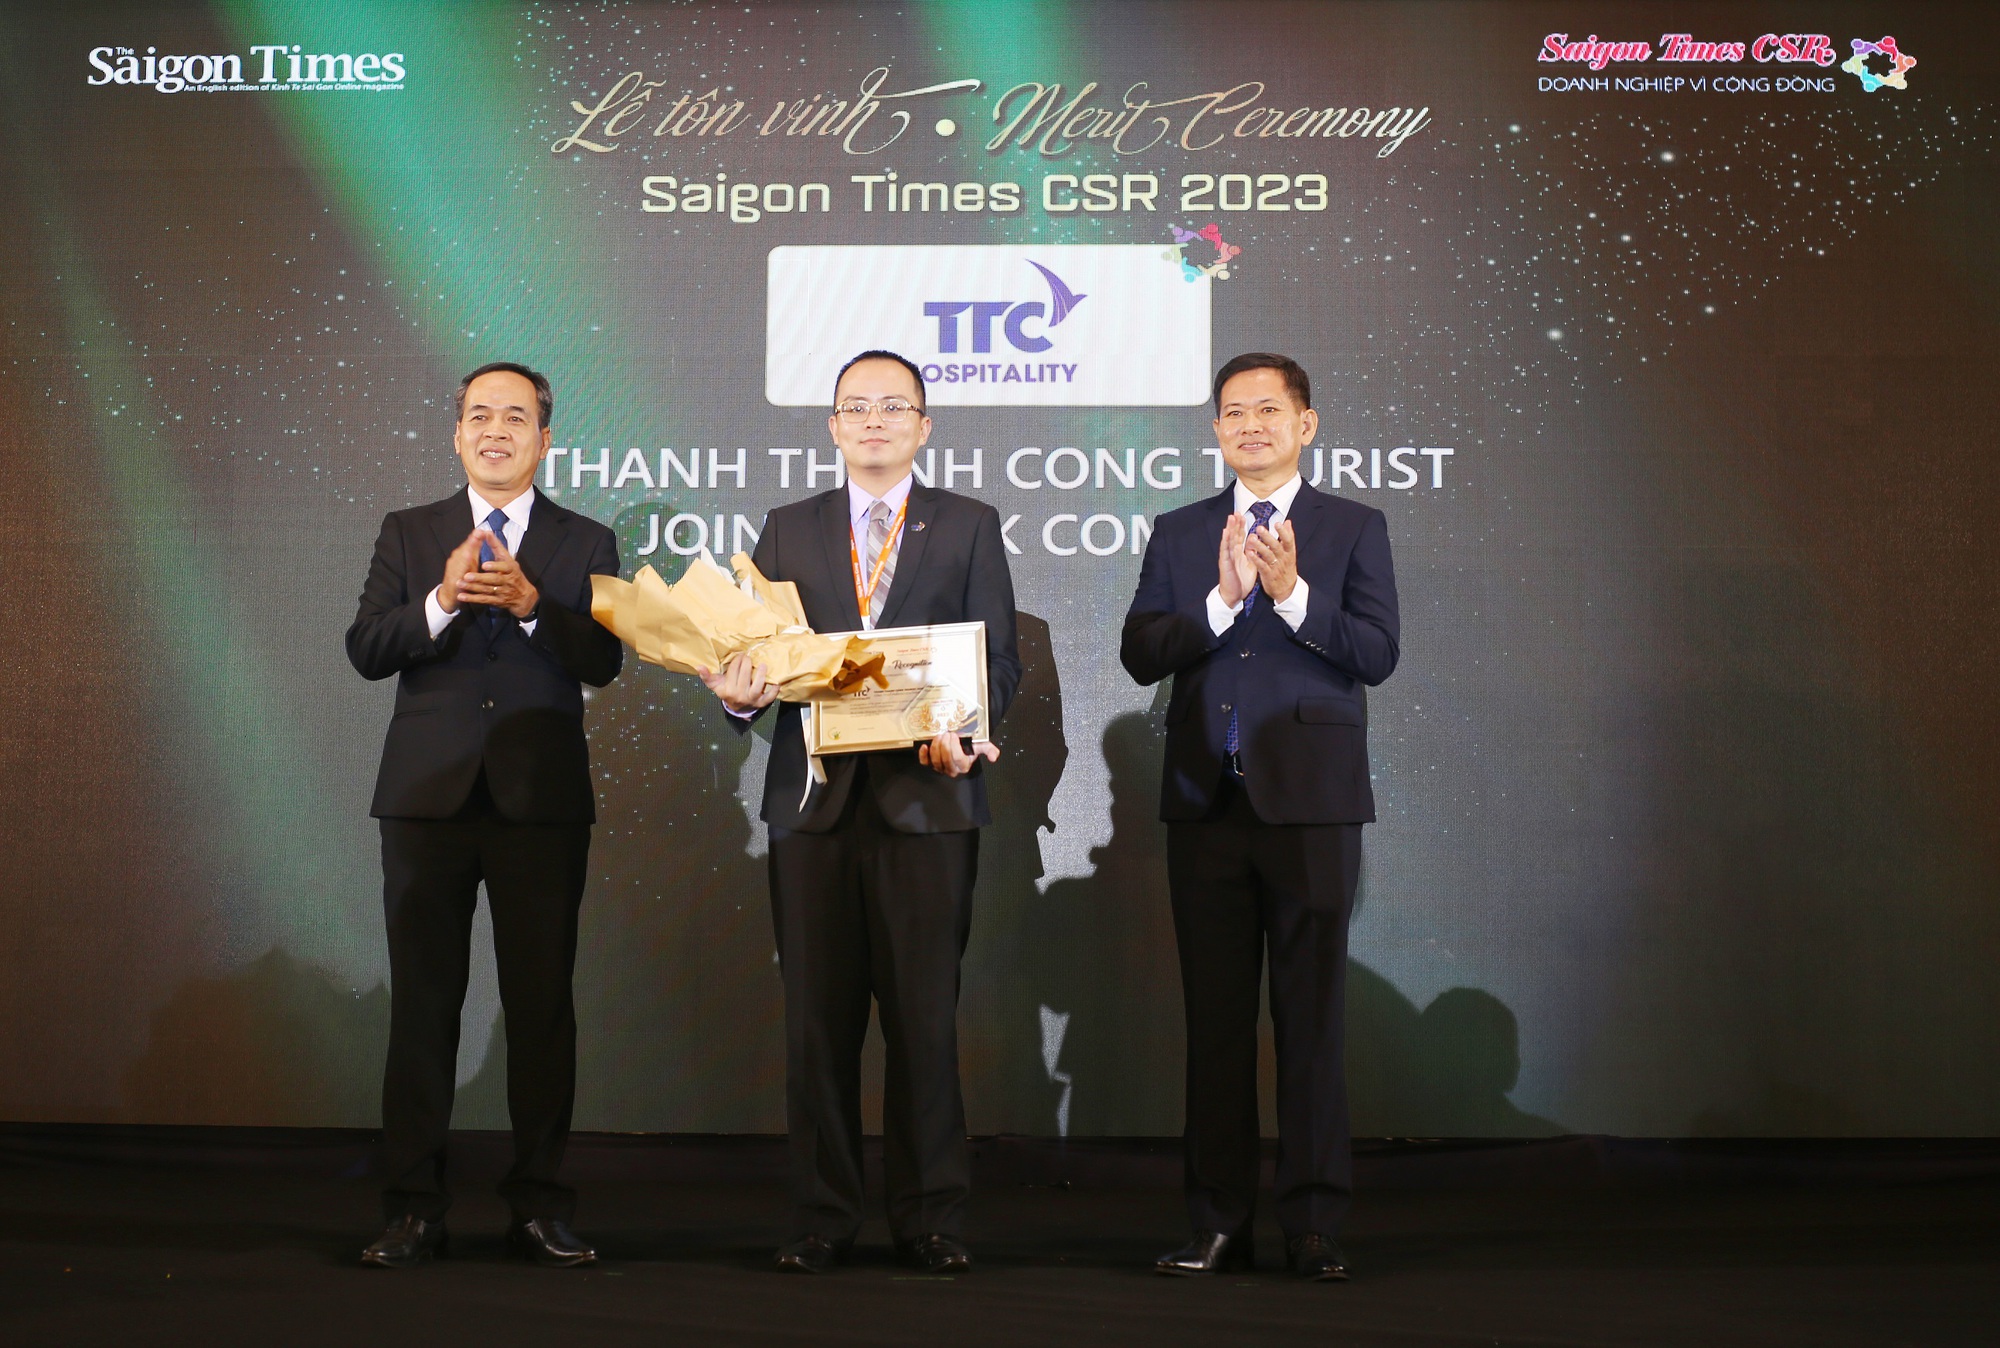 TTC Hospitality nhận vinh danh Saigon Times CSR 2023 - Doanh nghiệp vì cộng đồng năm 2023 - Ảnh 1.